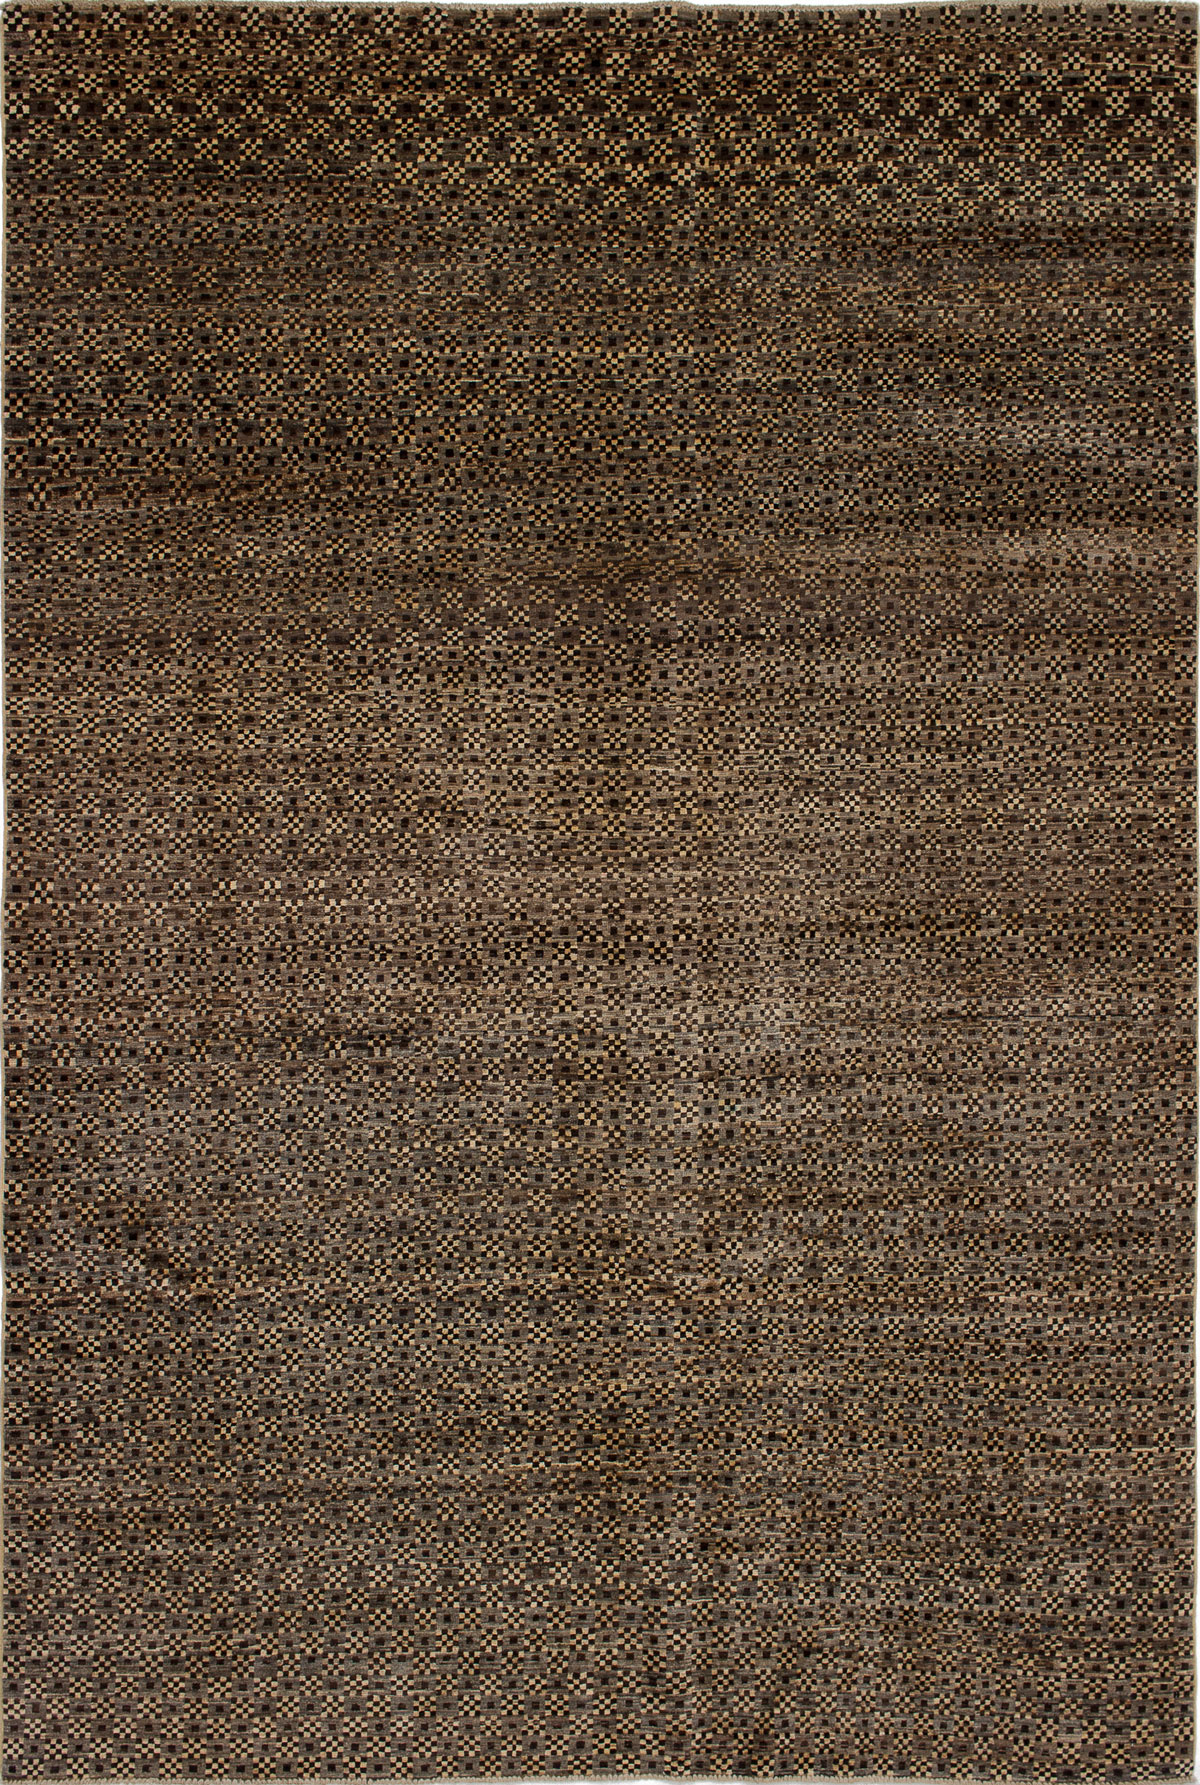 Hand-knotted Finest Ziegler Chobi Dark Brown, Grey Wool Rug 6'8" x 9'10" Size: 6'8" x 9'10"  